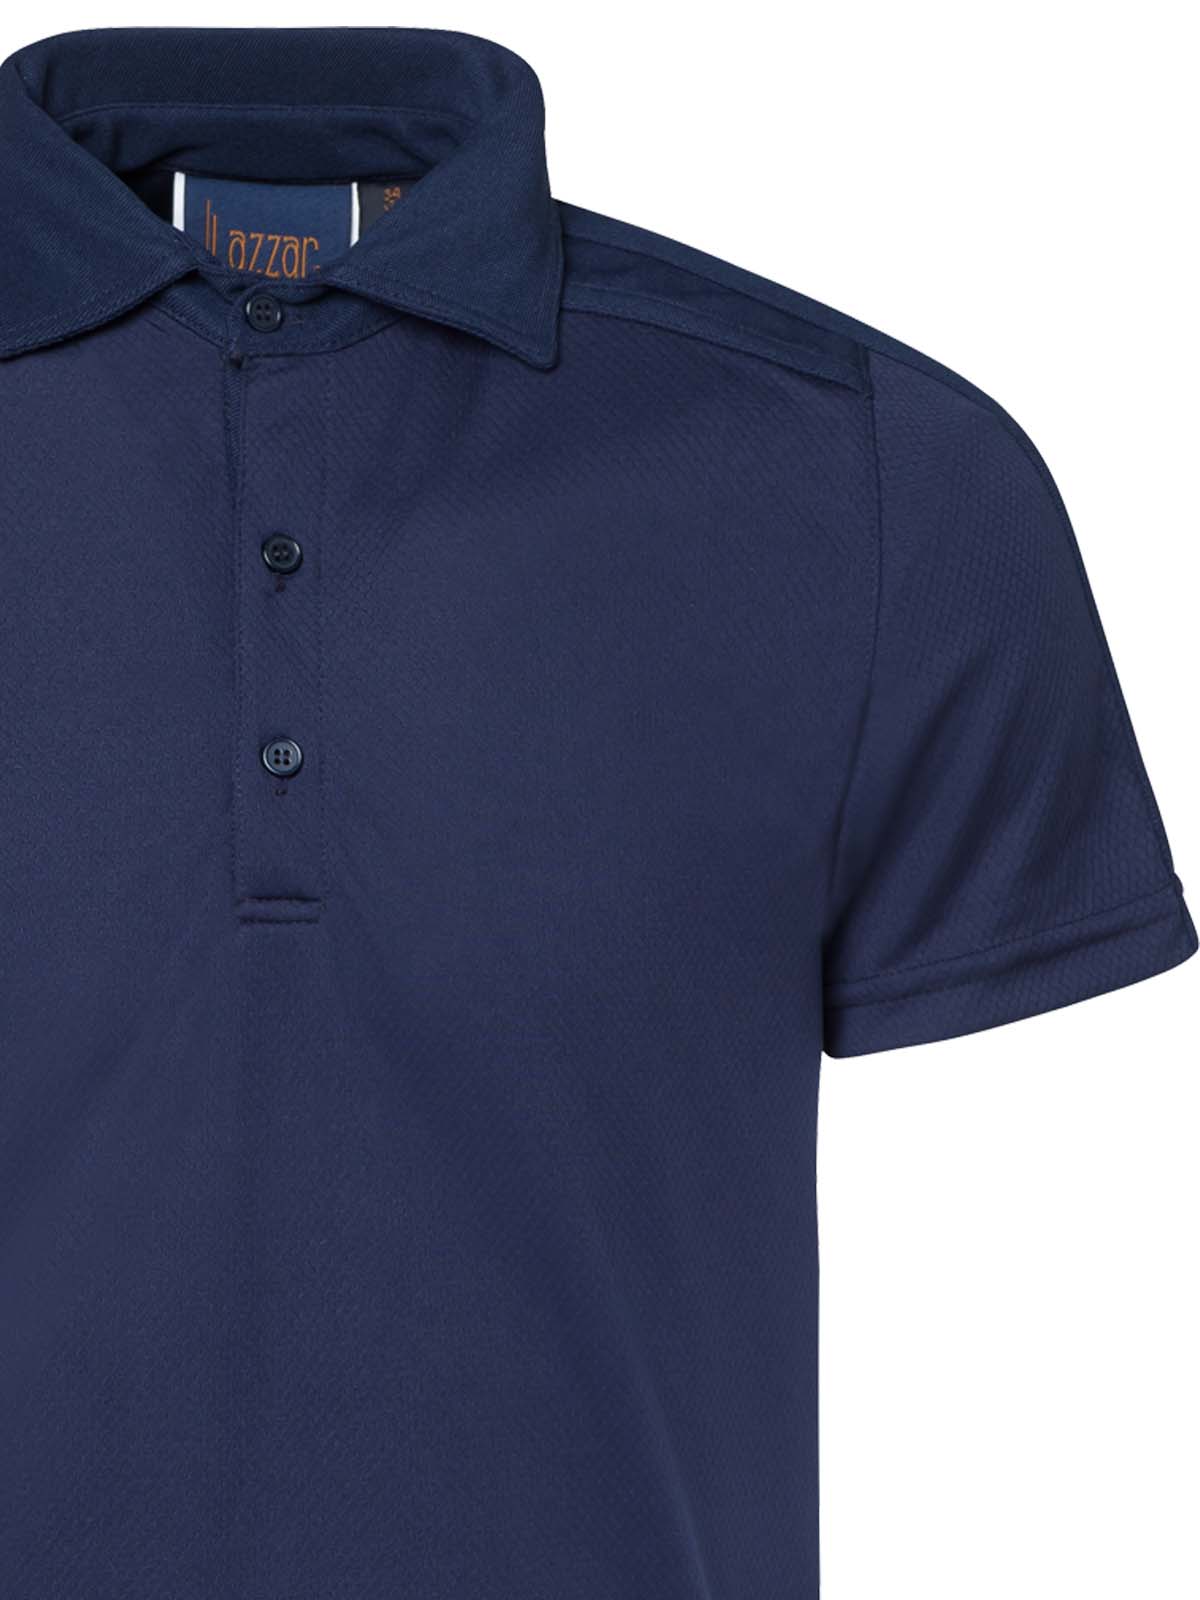 Golf Polo Shirt navy